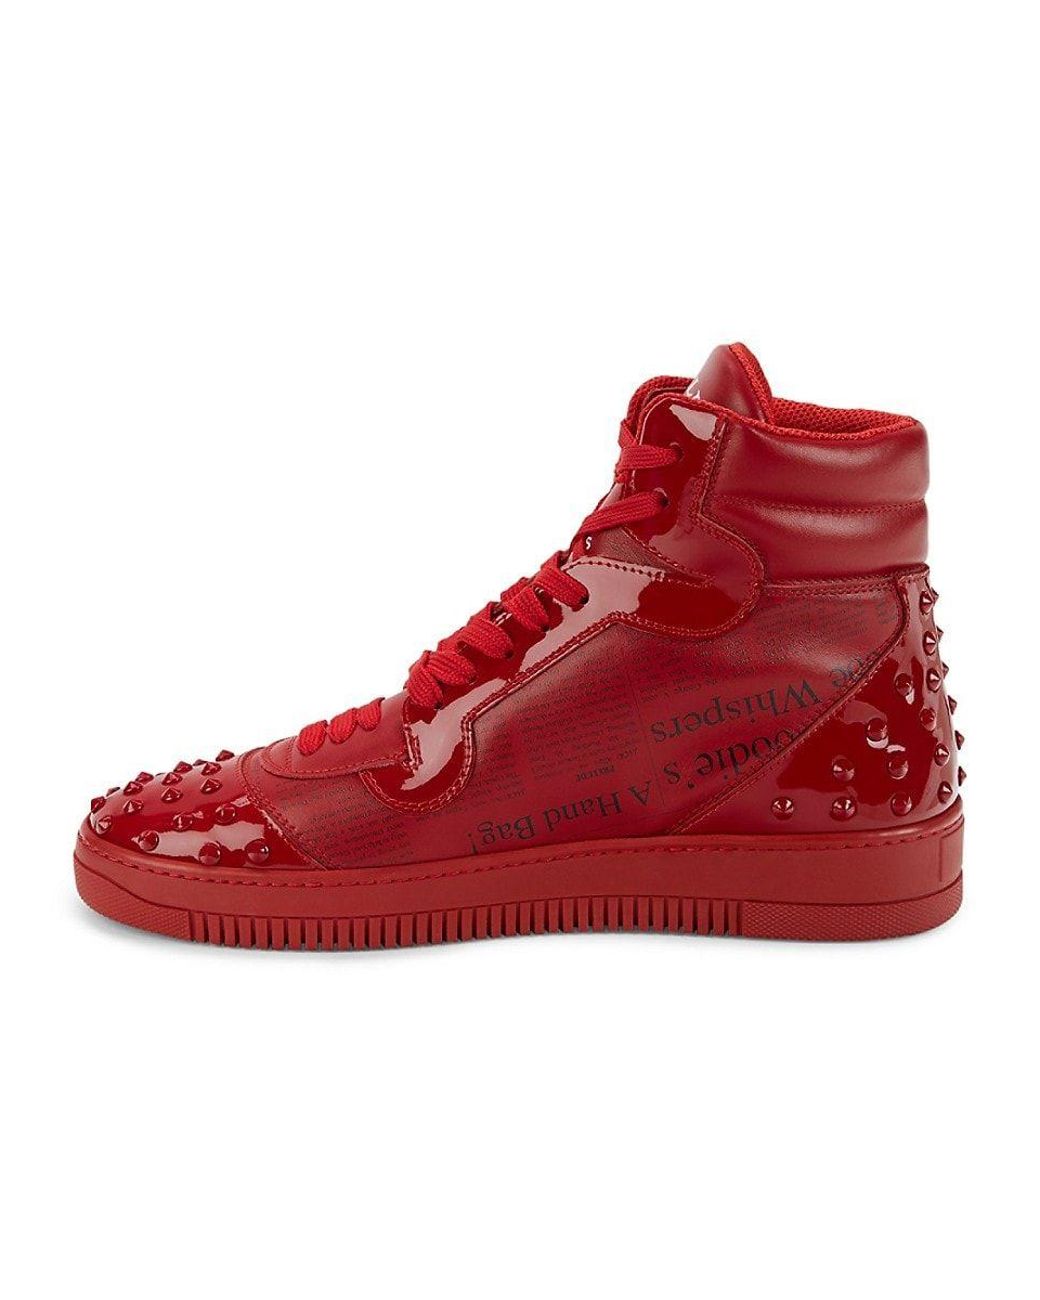 John Galliano Shoe Size 44.5 Red High Top Men's Shoes